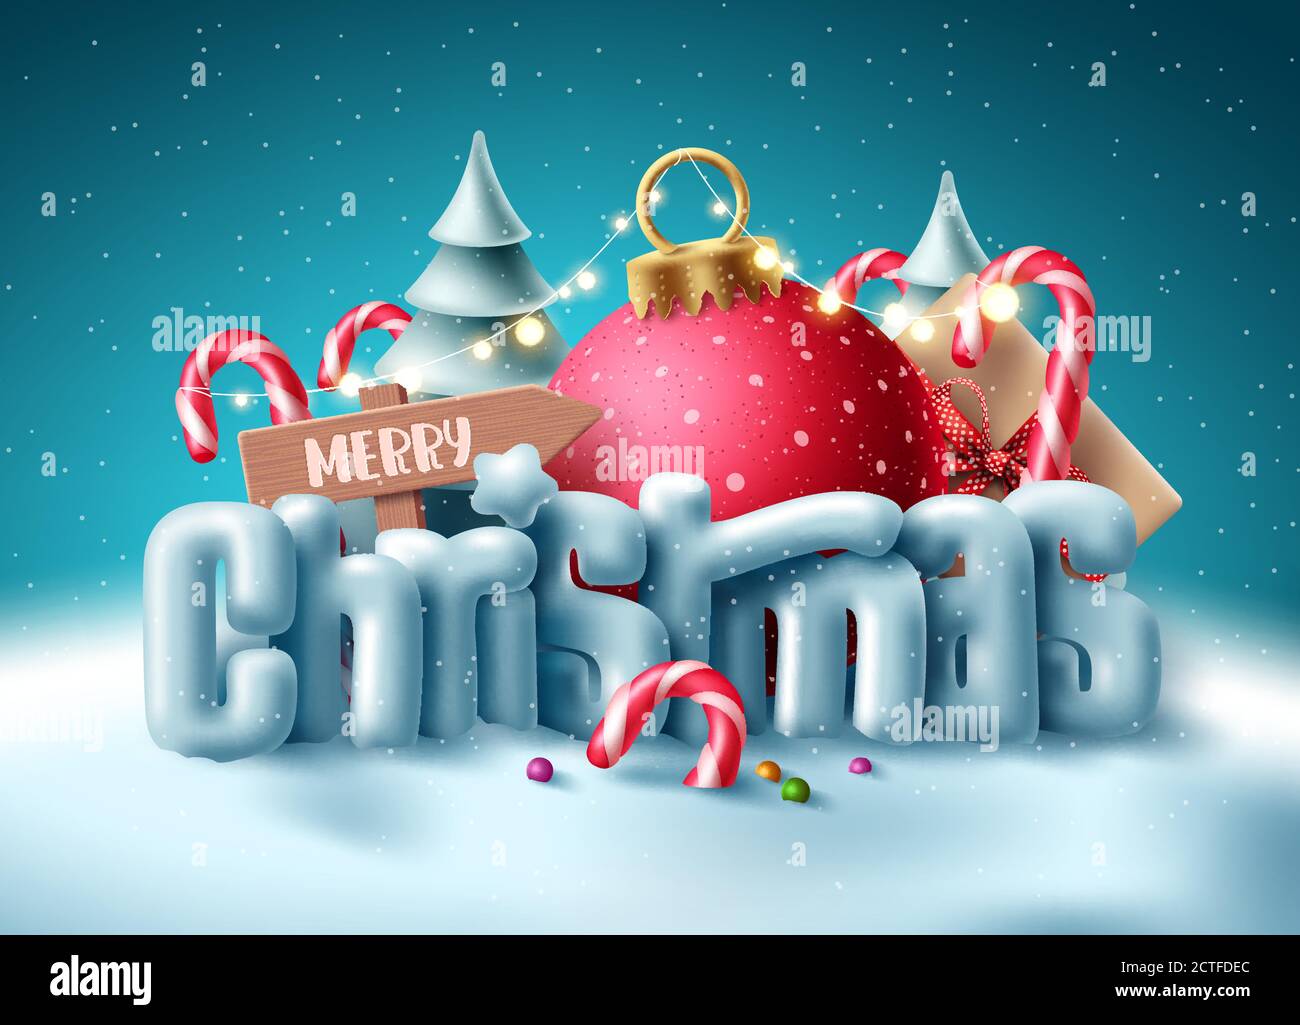 Weihnachten 3d Text Vektor Konzept Design. Frohe weihnachten Gruß Typografie mit Miniatur-Dekoration im Schnee Winter Hintergrund für Weihnachten Urlaub Stock Vektor